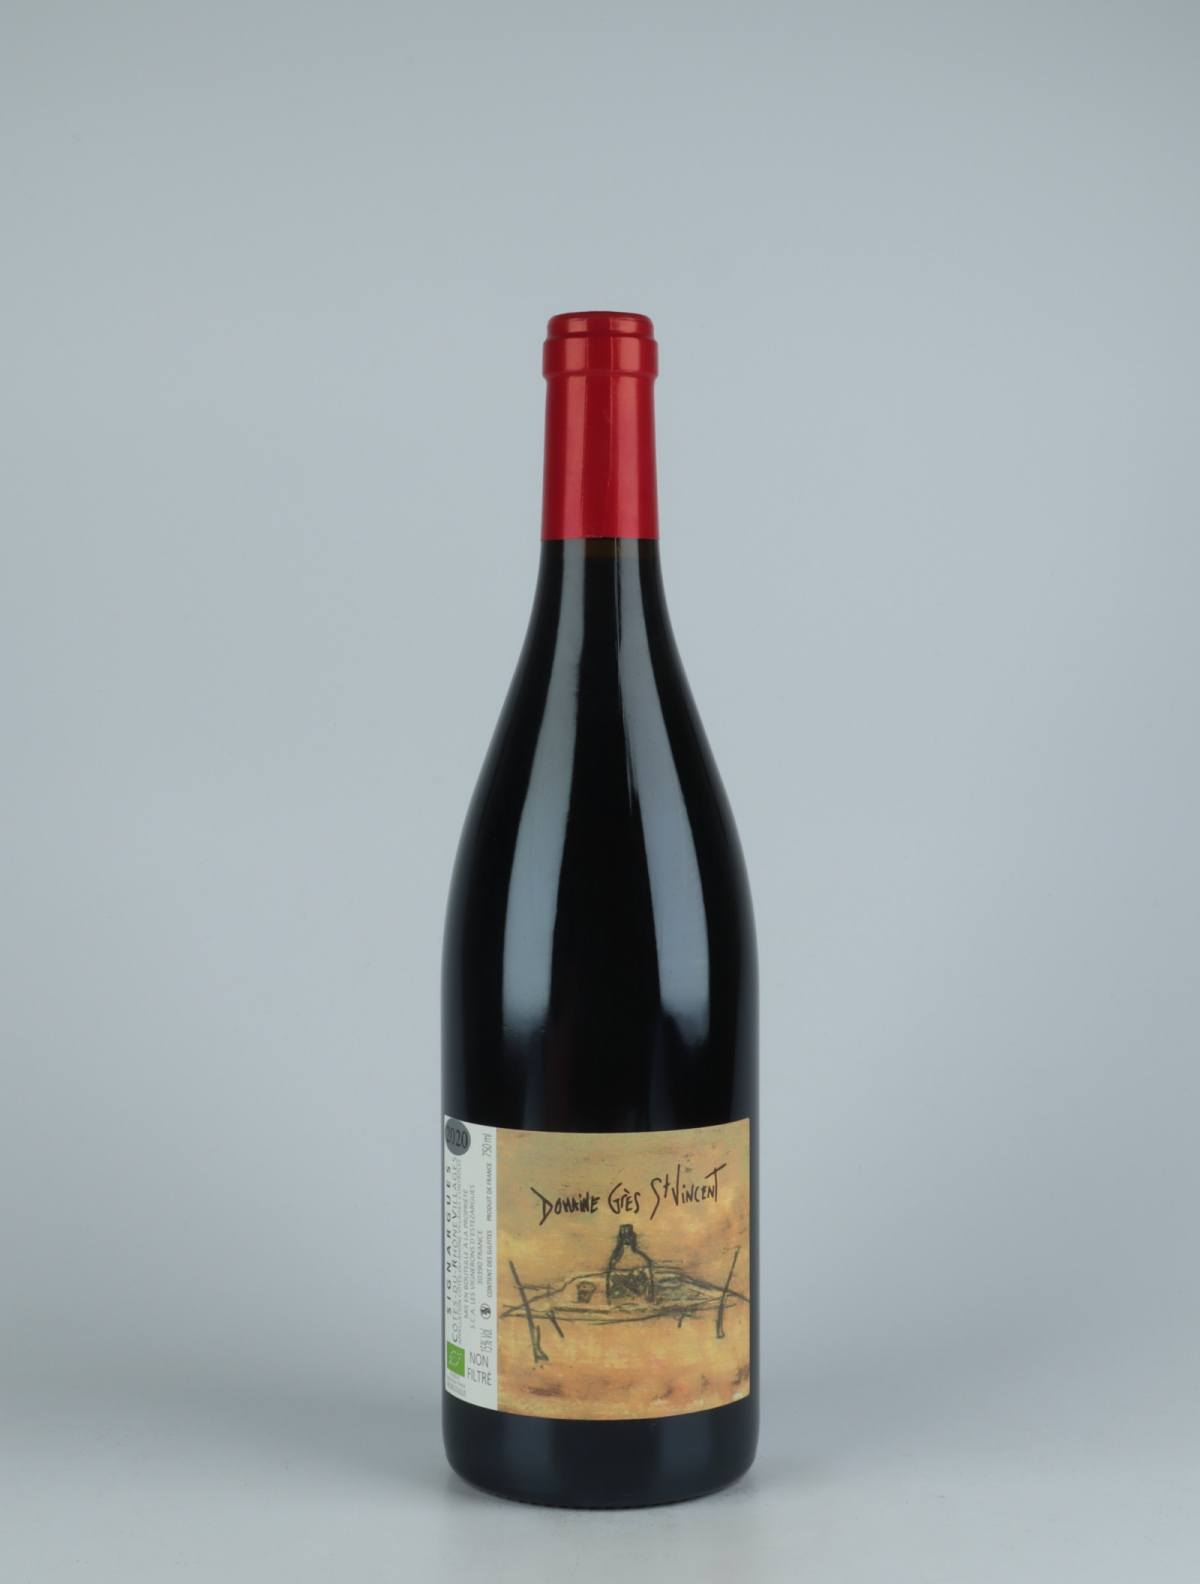 A bottle  Côtes du Rhône - Grès St Vincent Red wine from Les Vignerons d’Estézargues, Rhône in France